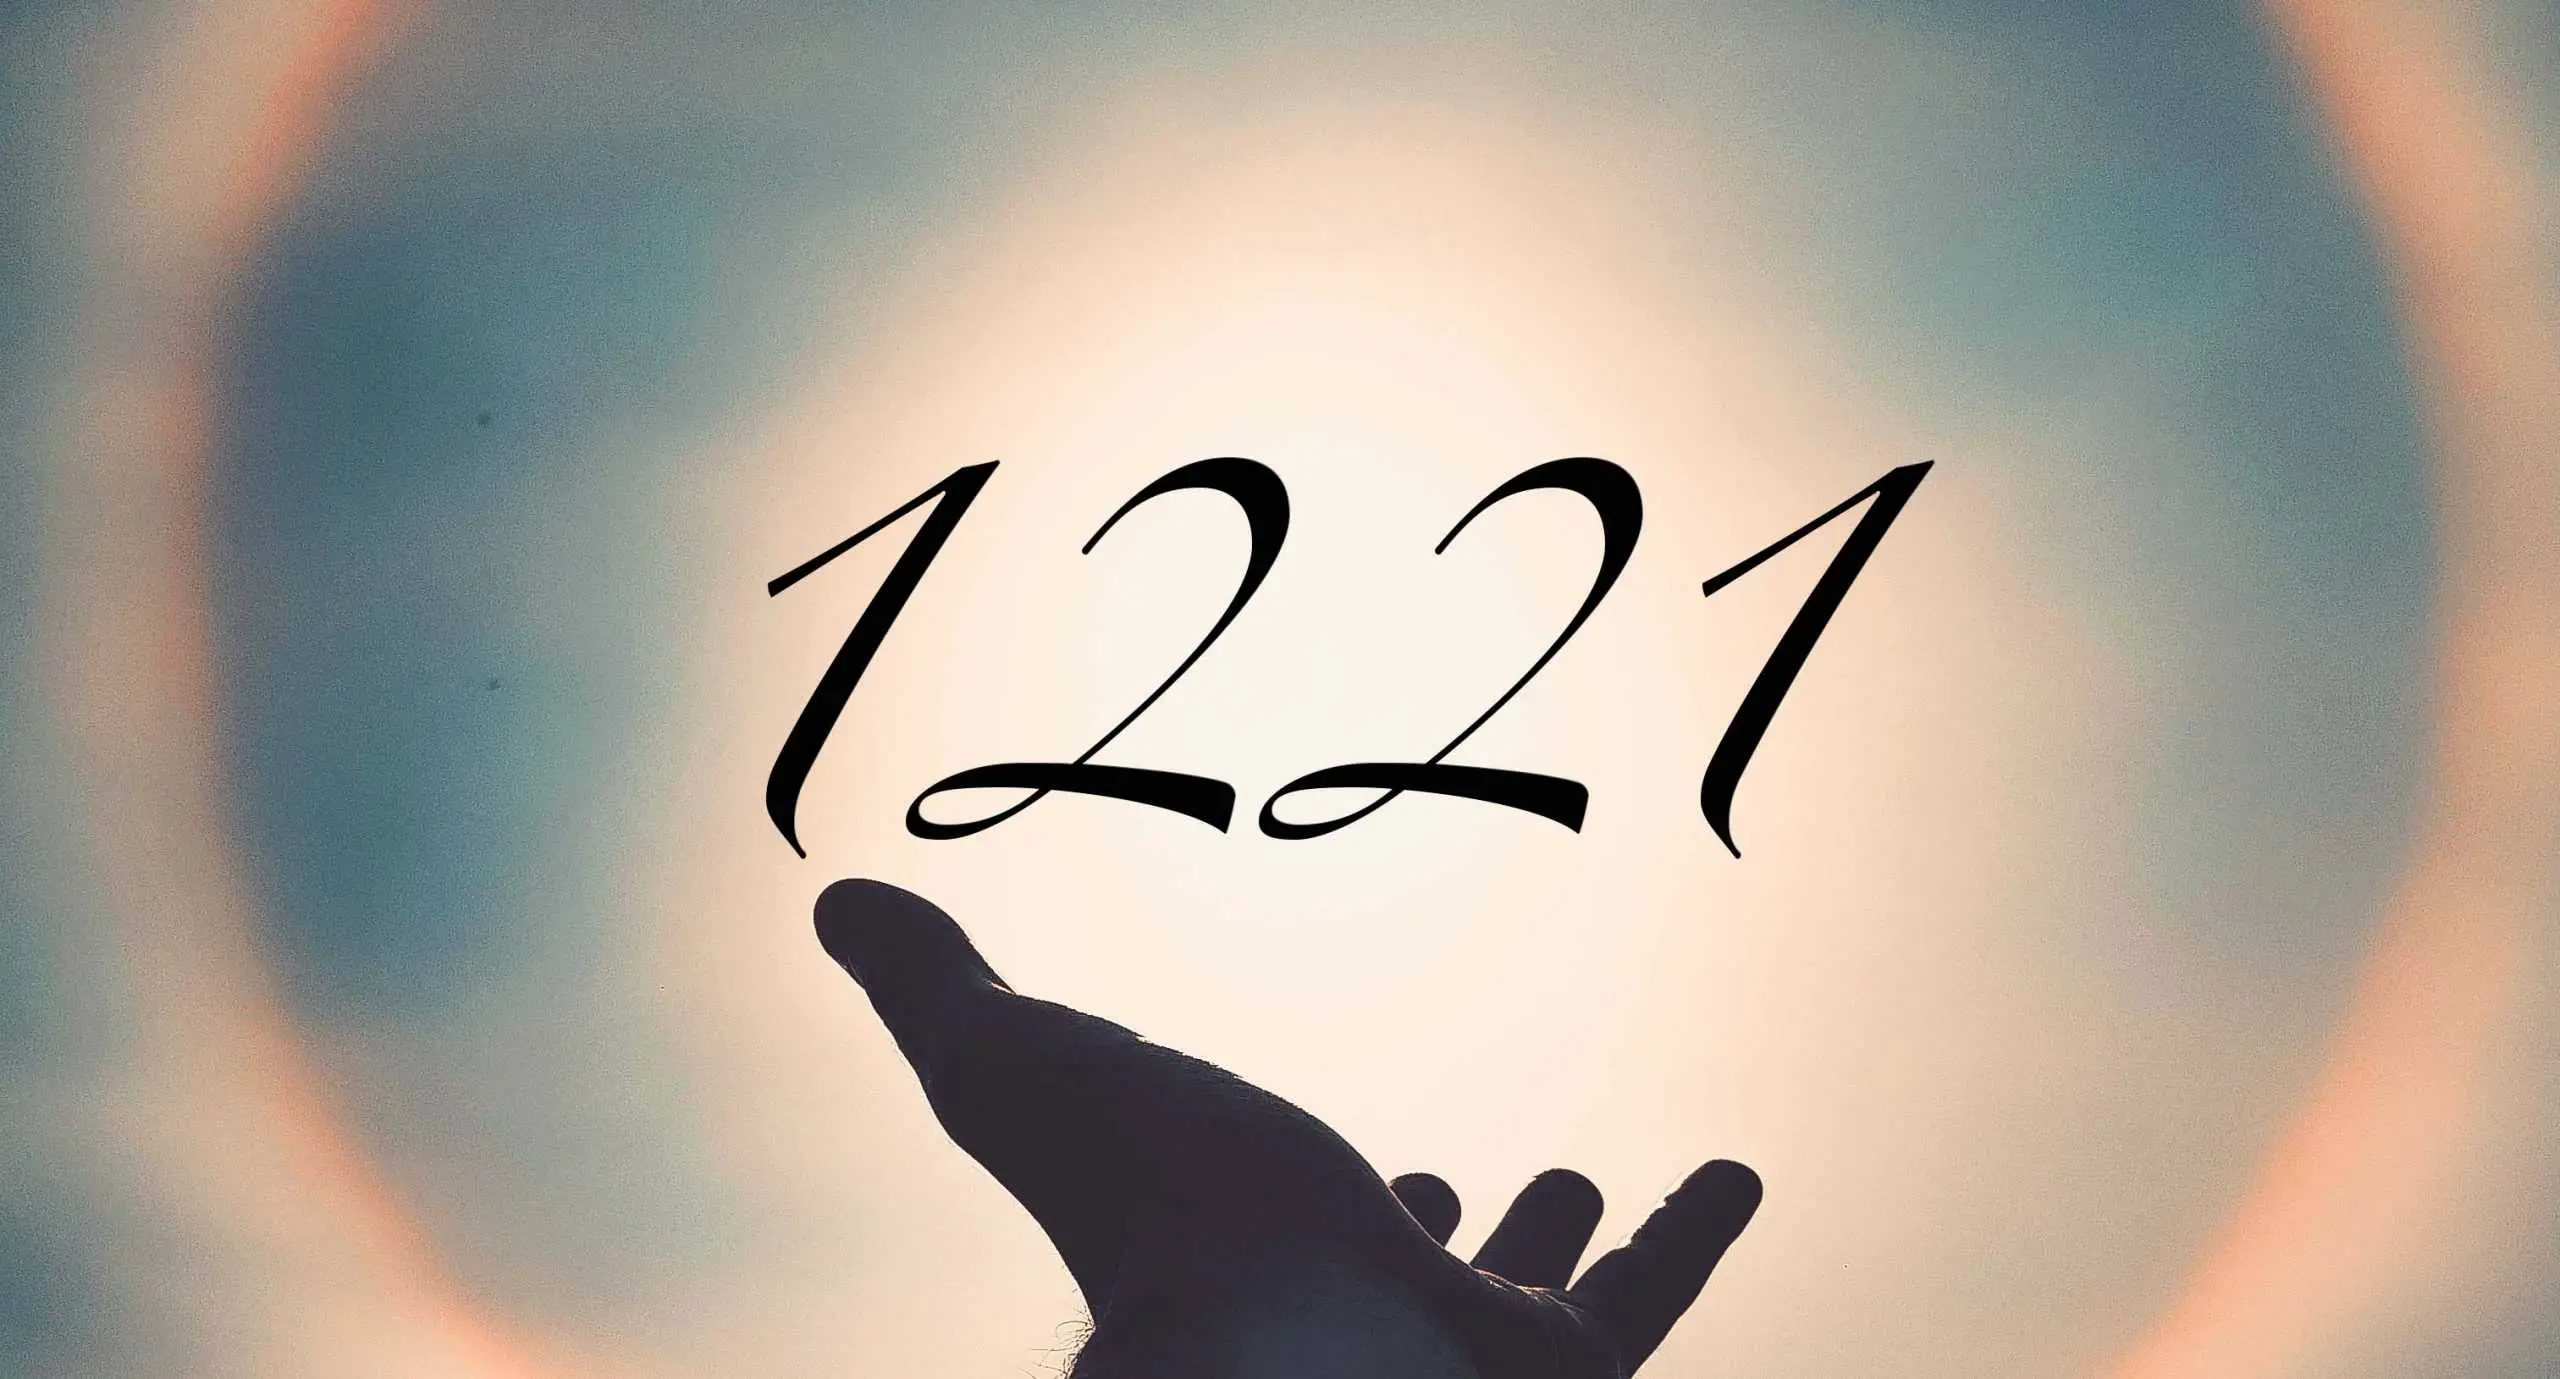 Signification du nombre 1221